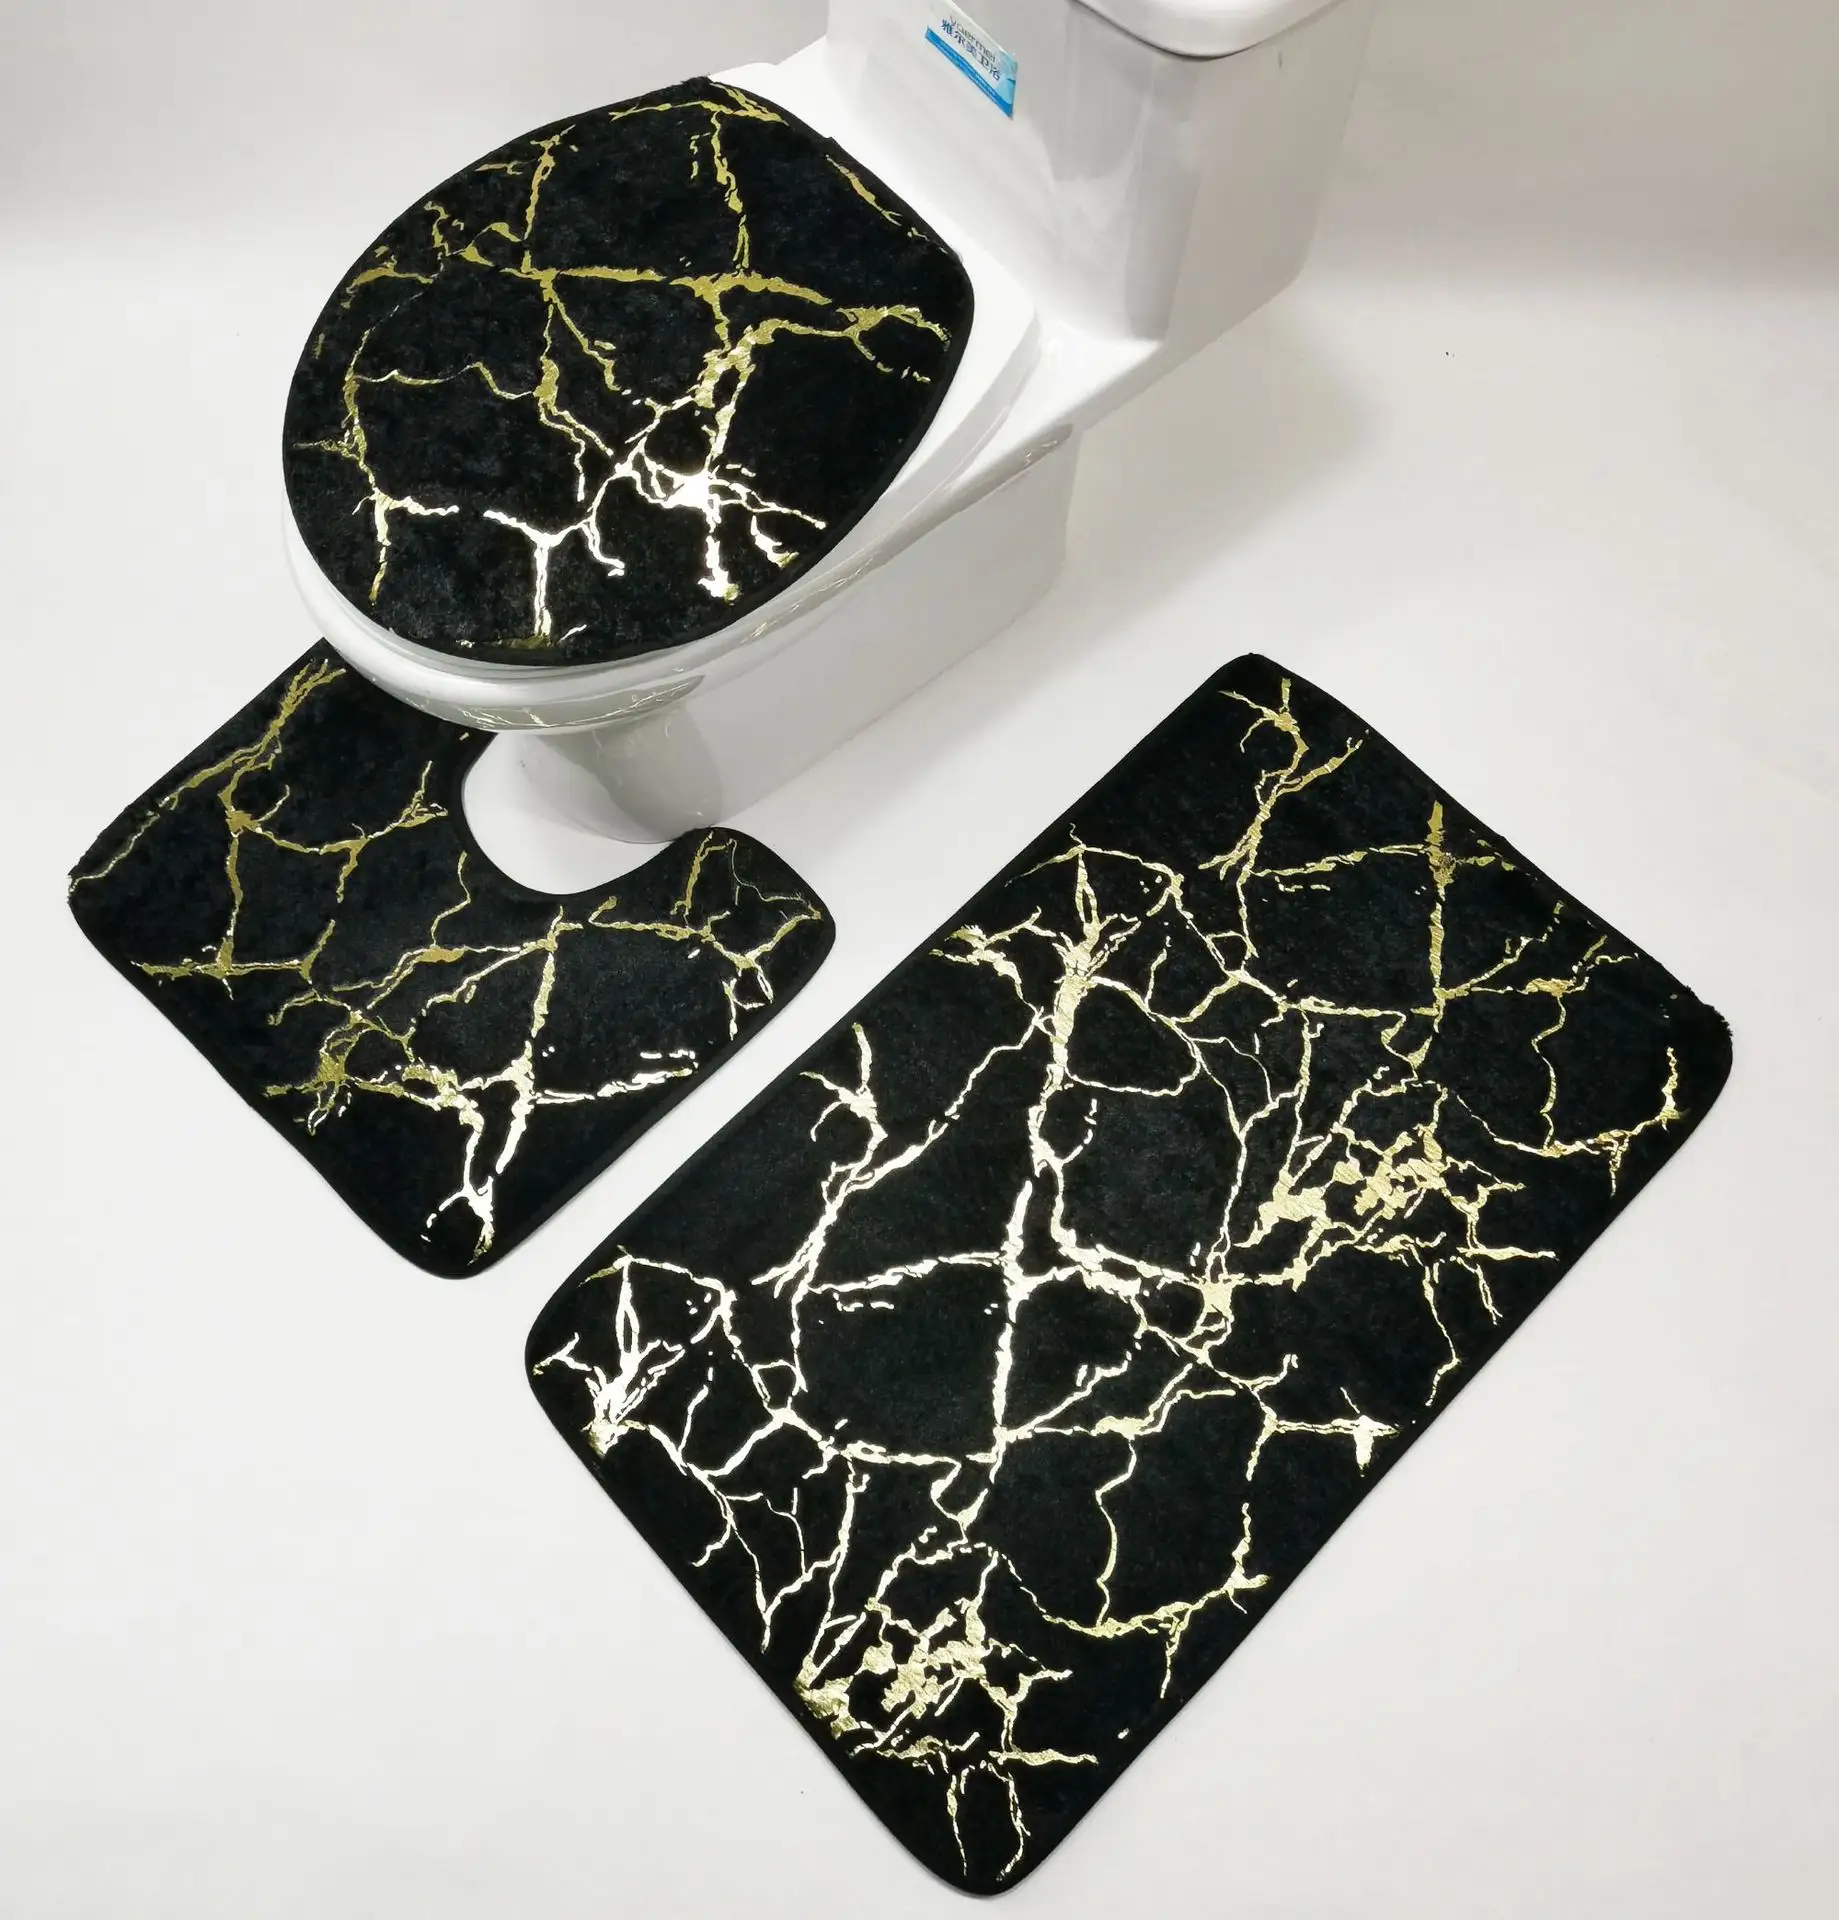 Diatom Mud Qualitäts sicherung Rutsch feste Schnellt rocknung 3-teiliges Badeteppich-Set Weiches U-förmiges Toilettenmatten-Set für Badezimmer